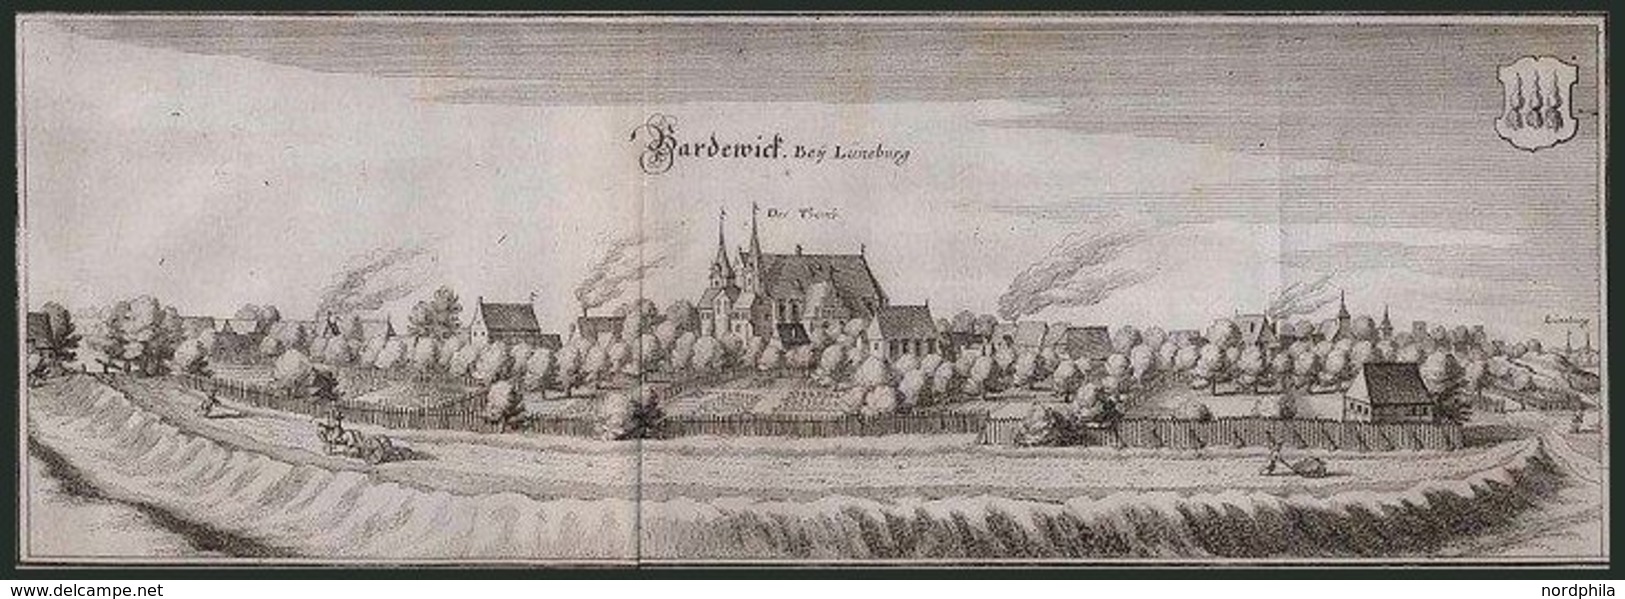 BARDEWIK Bei Lüneburg, Gesamtansicht, Kupferstich Von Merian Um 1645 - Litografia